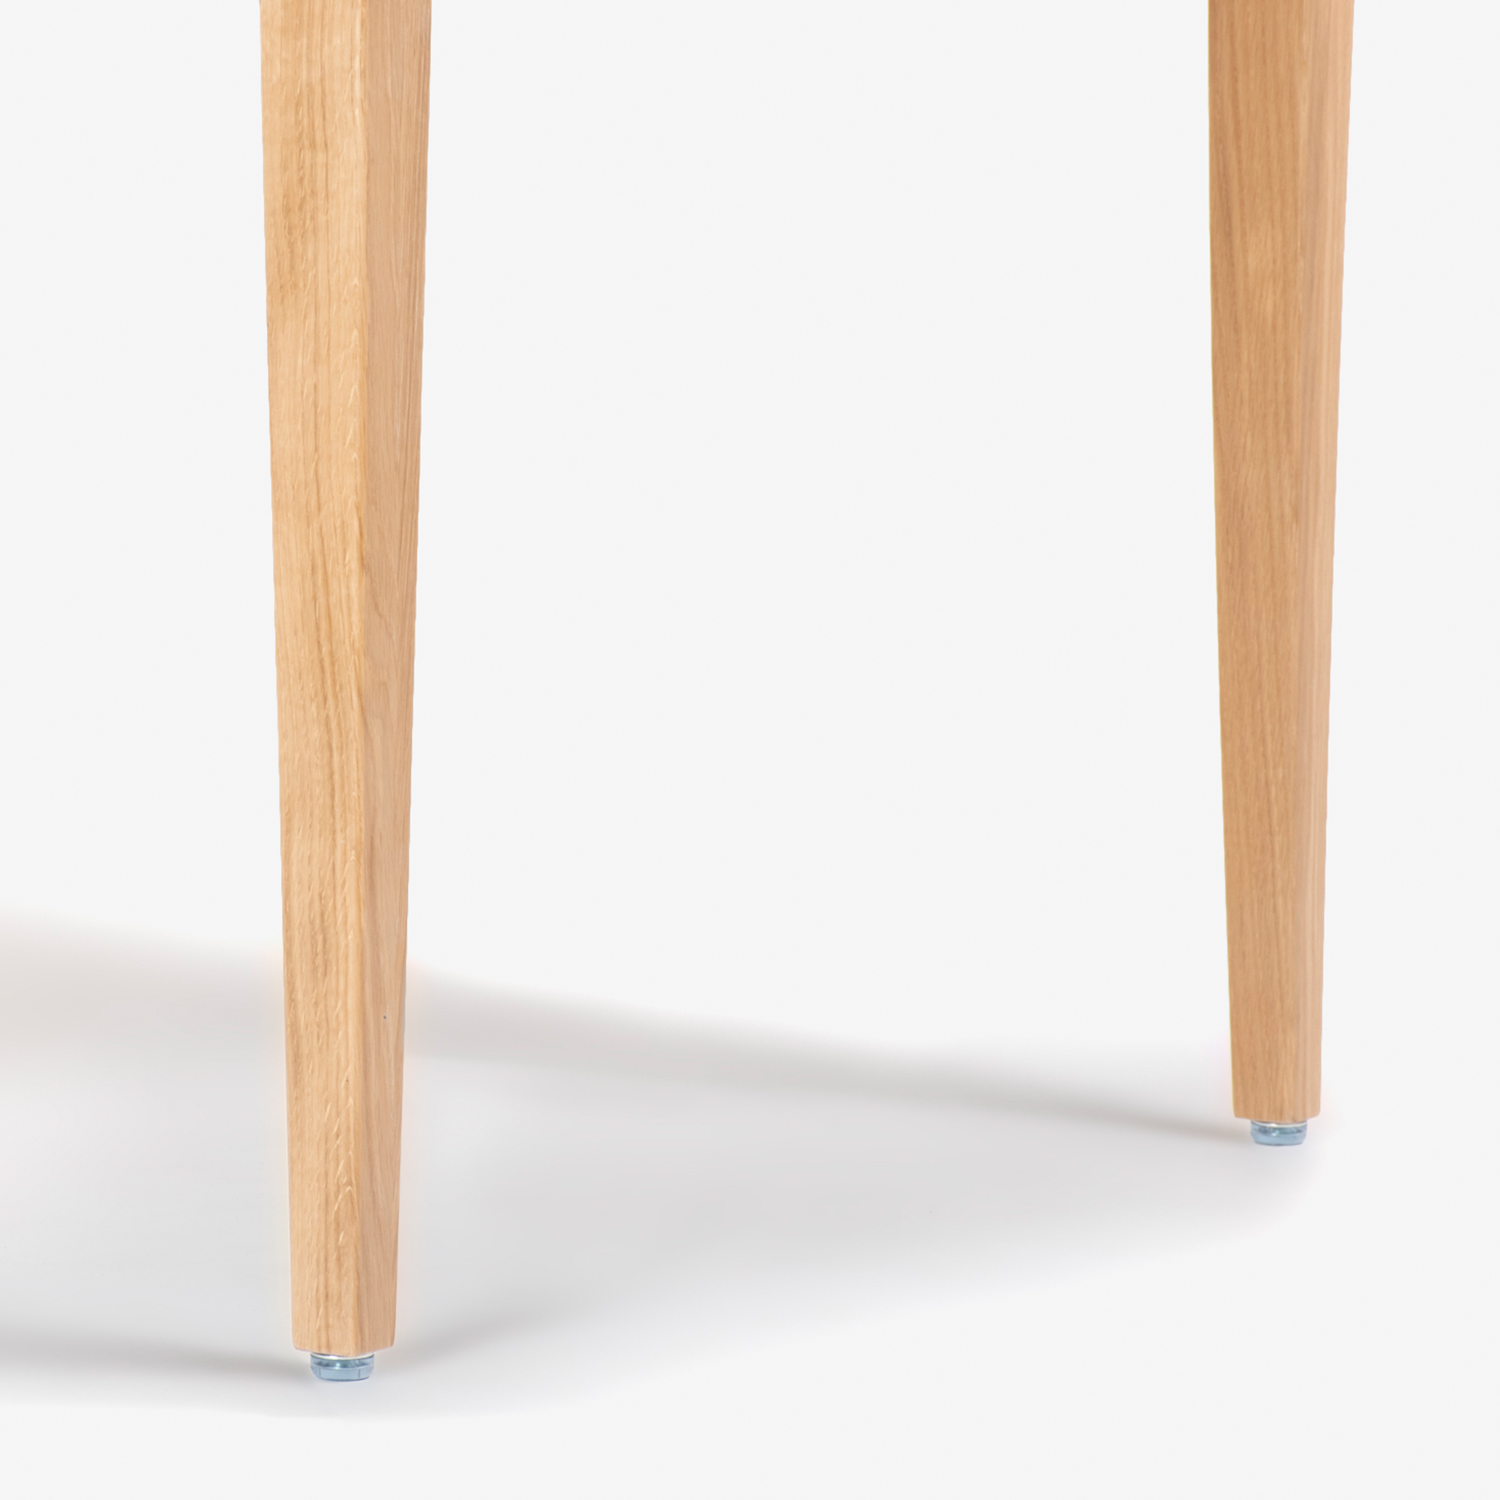 秋田木工 ダイニングテーブル「N-T005」正方形 ナラ材 ホワイトオーク色【在庫商品特別ご提供価格のため20%off】